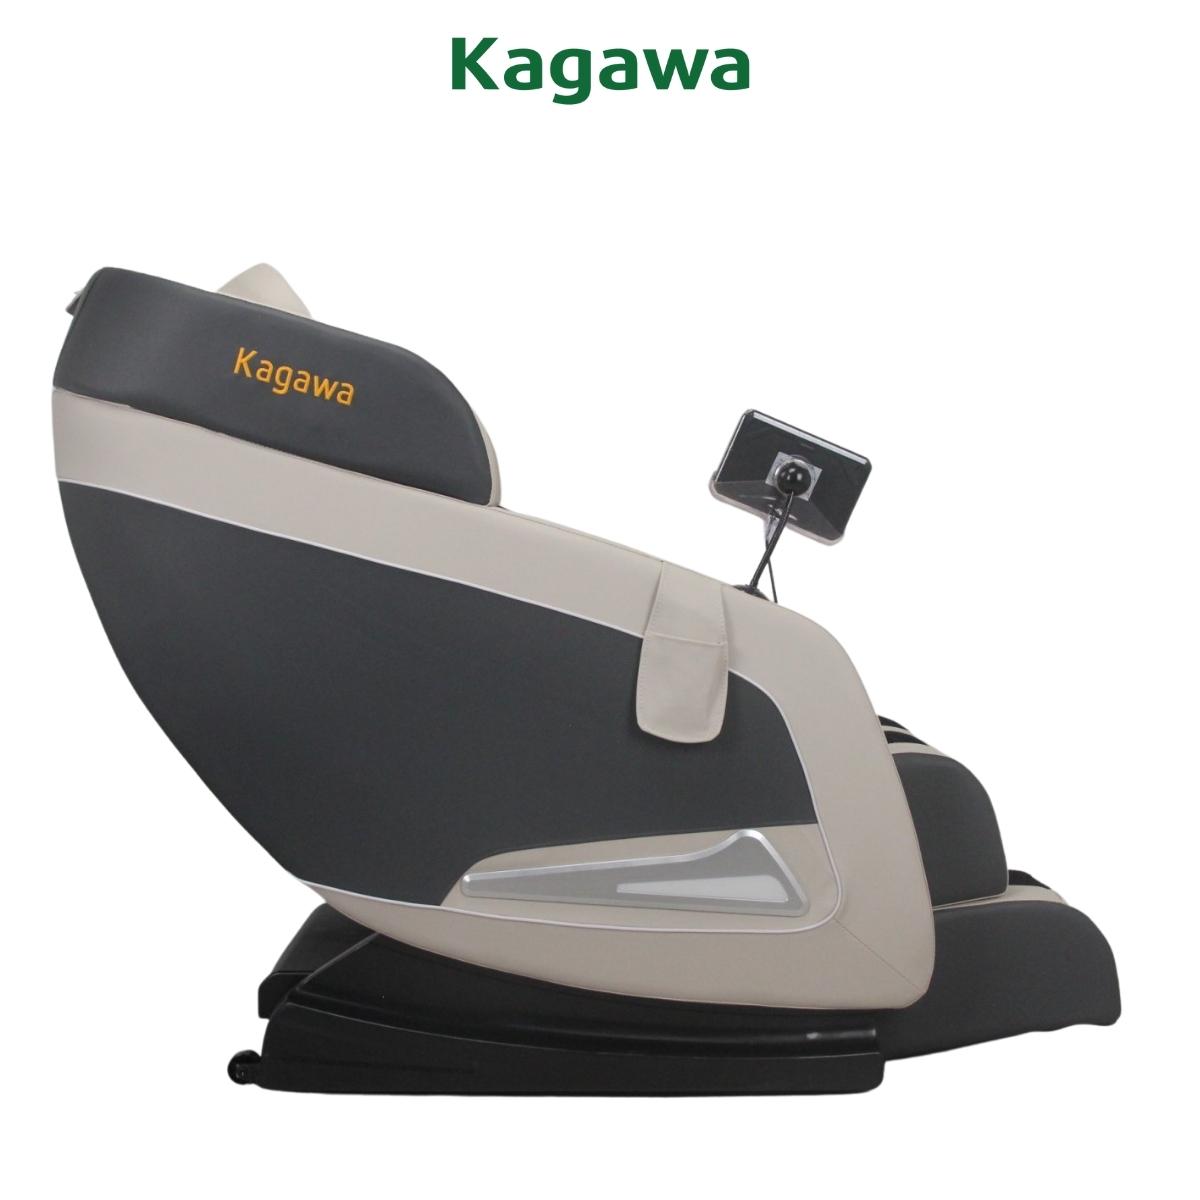 Ghế massage trị liệu toàn thân KAGAWA K28 PRO [FULL QUÀ TẶNG] công nghệ mát xa nhiệt hồng ngoại tân tiến giúp thư giãn, giảm stress tại nhà